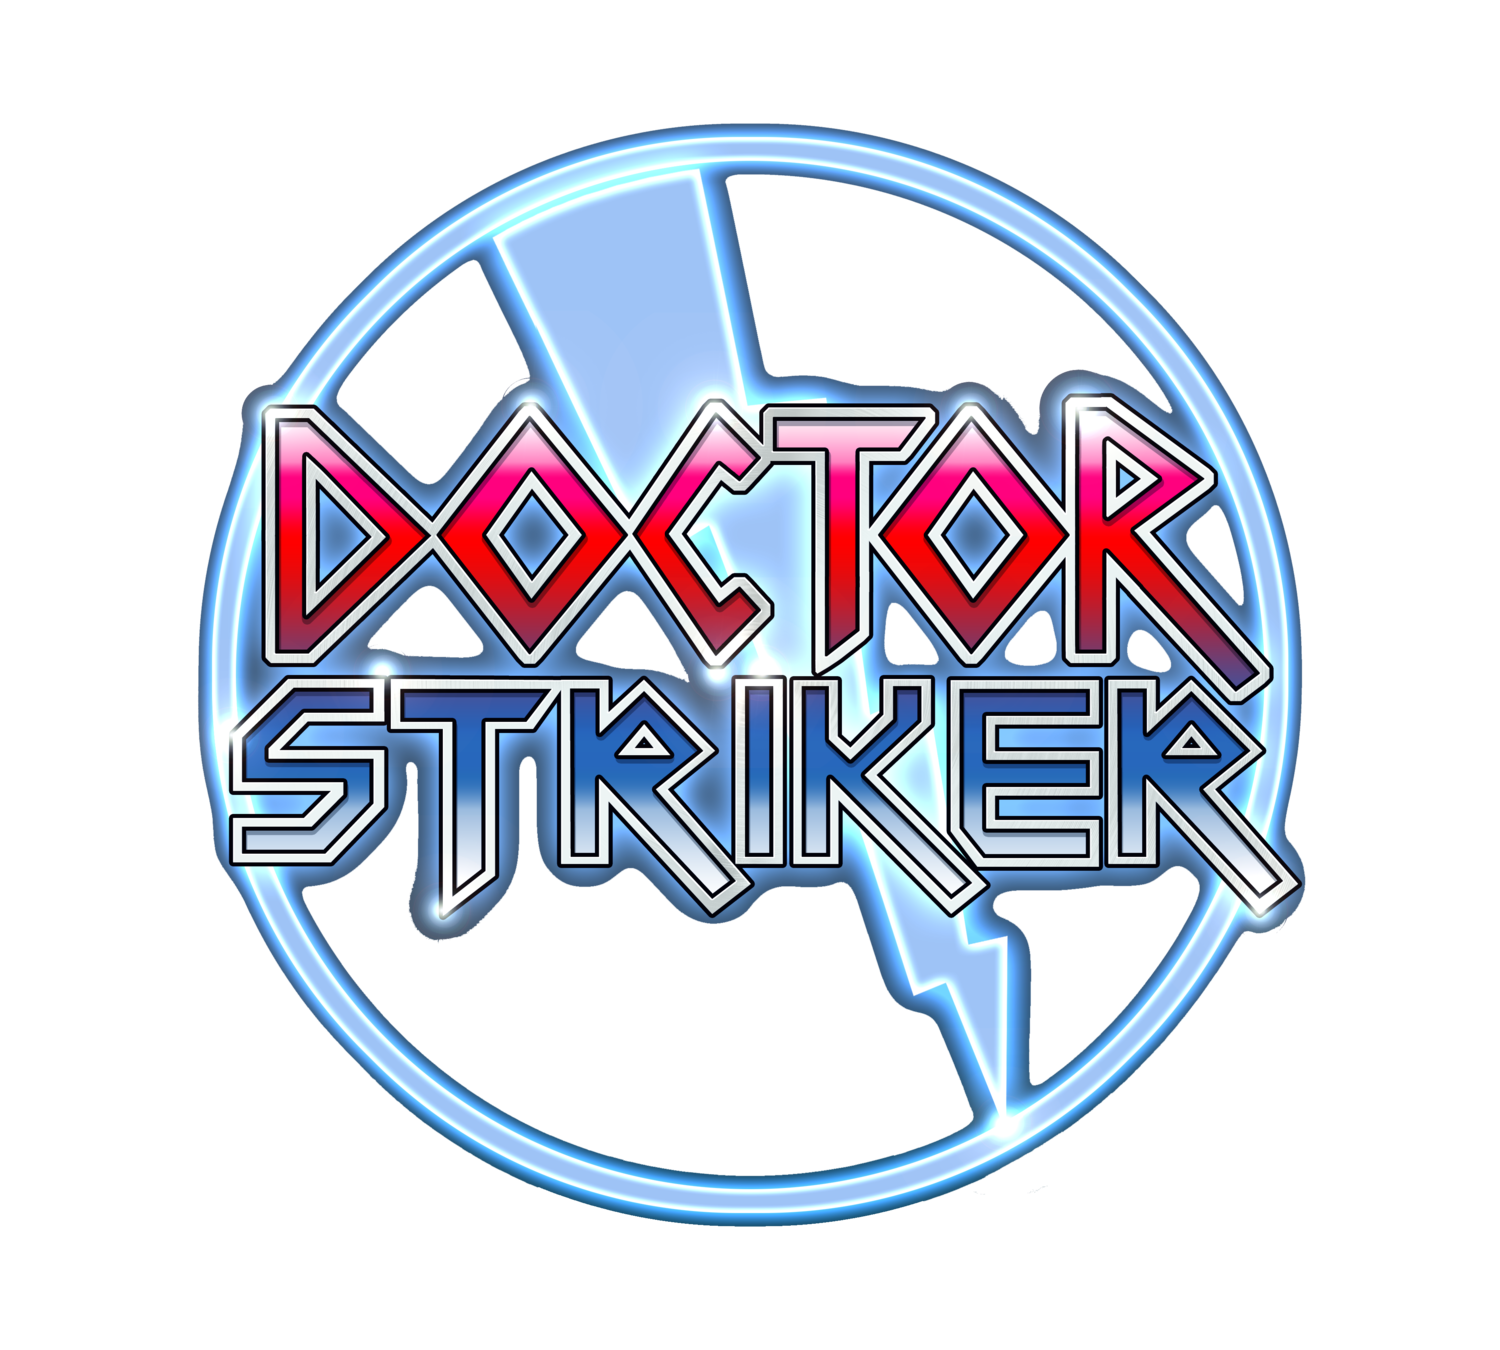 Doctor Striker